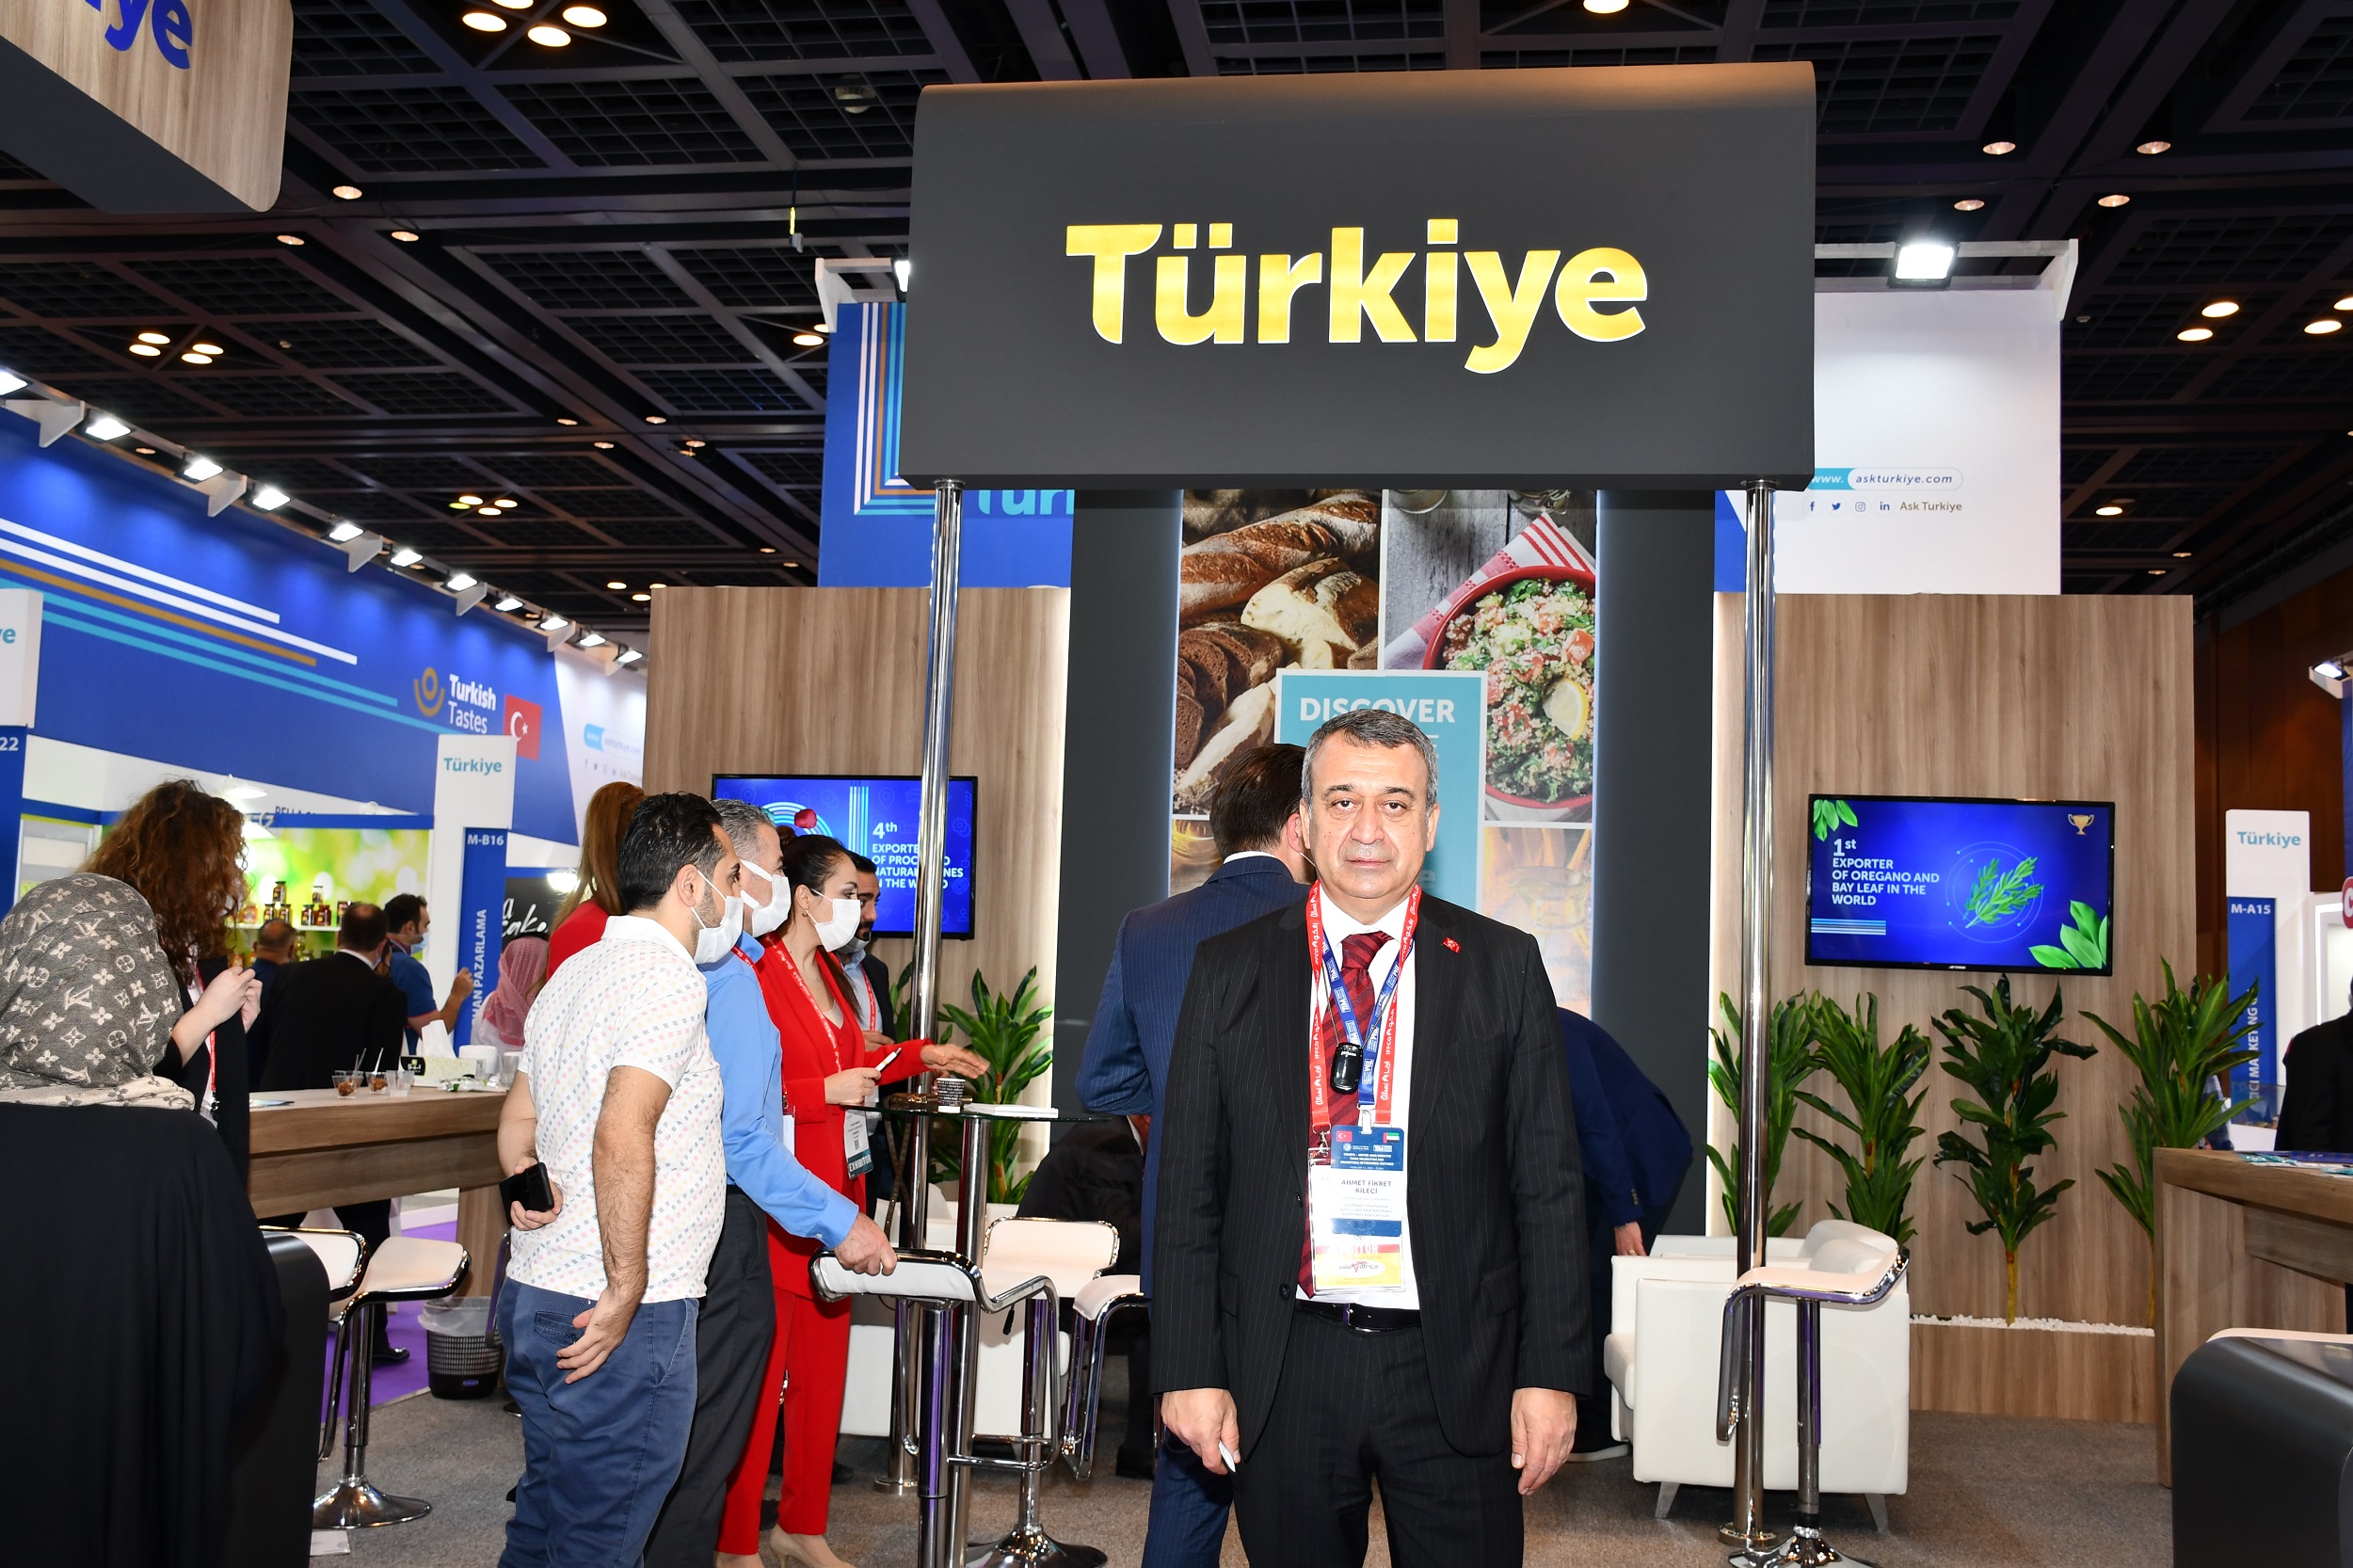 Kileci :Türkiye  Uluslararası Fuarlar Açısından Önemli Bir Cazibe Merkezi Olabilir